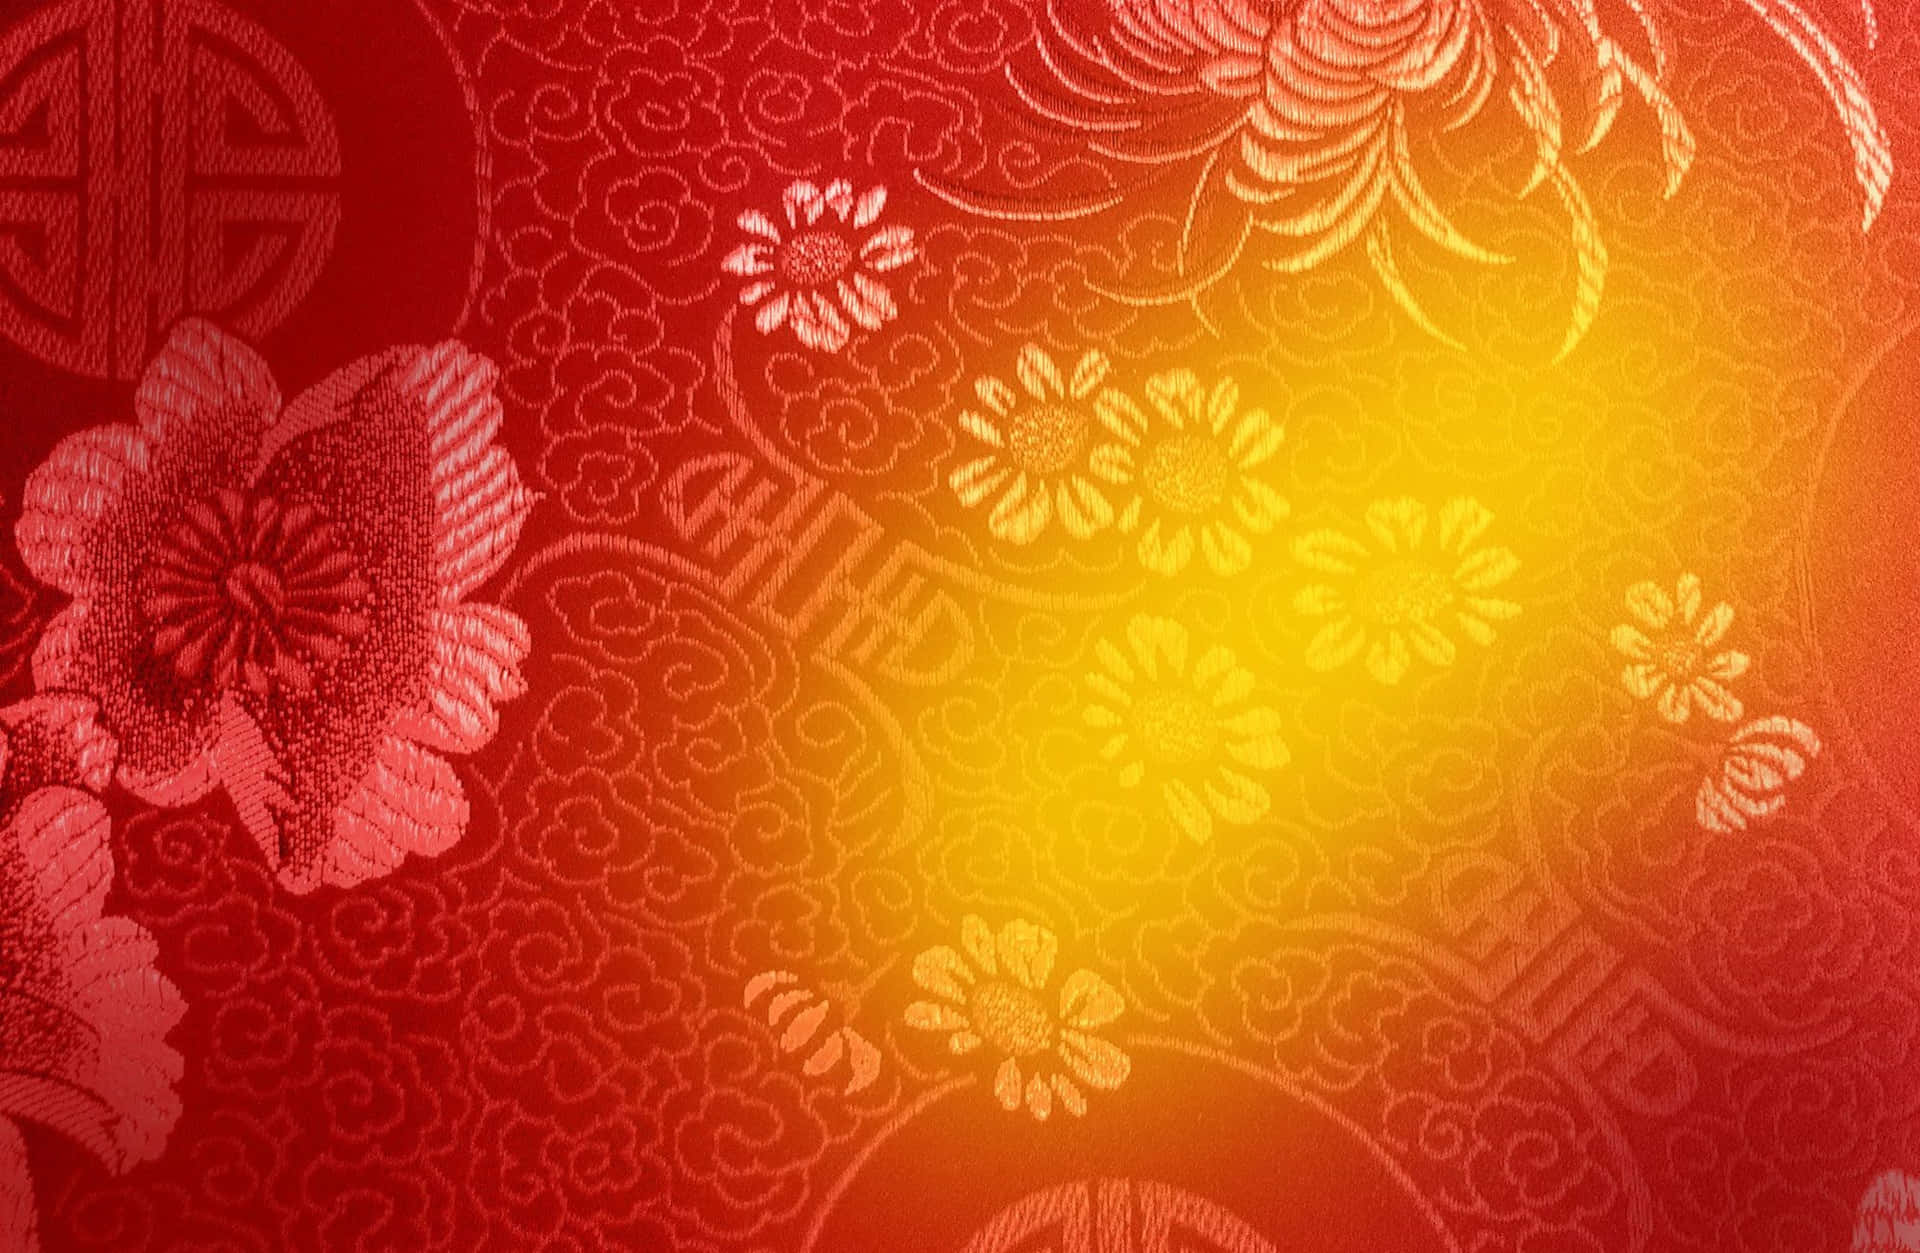 Unsímbolo De Alegría Y Prosperidad: Un Festivo Fondo Dorado Para El Año Nuevo Chino.